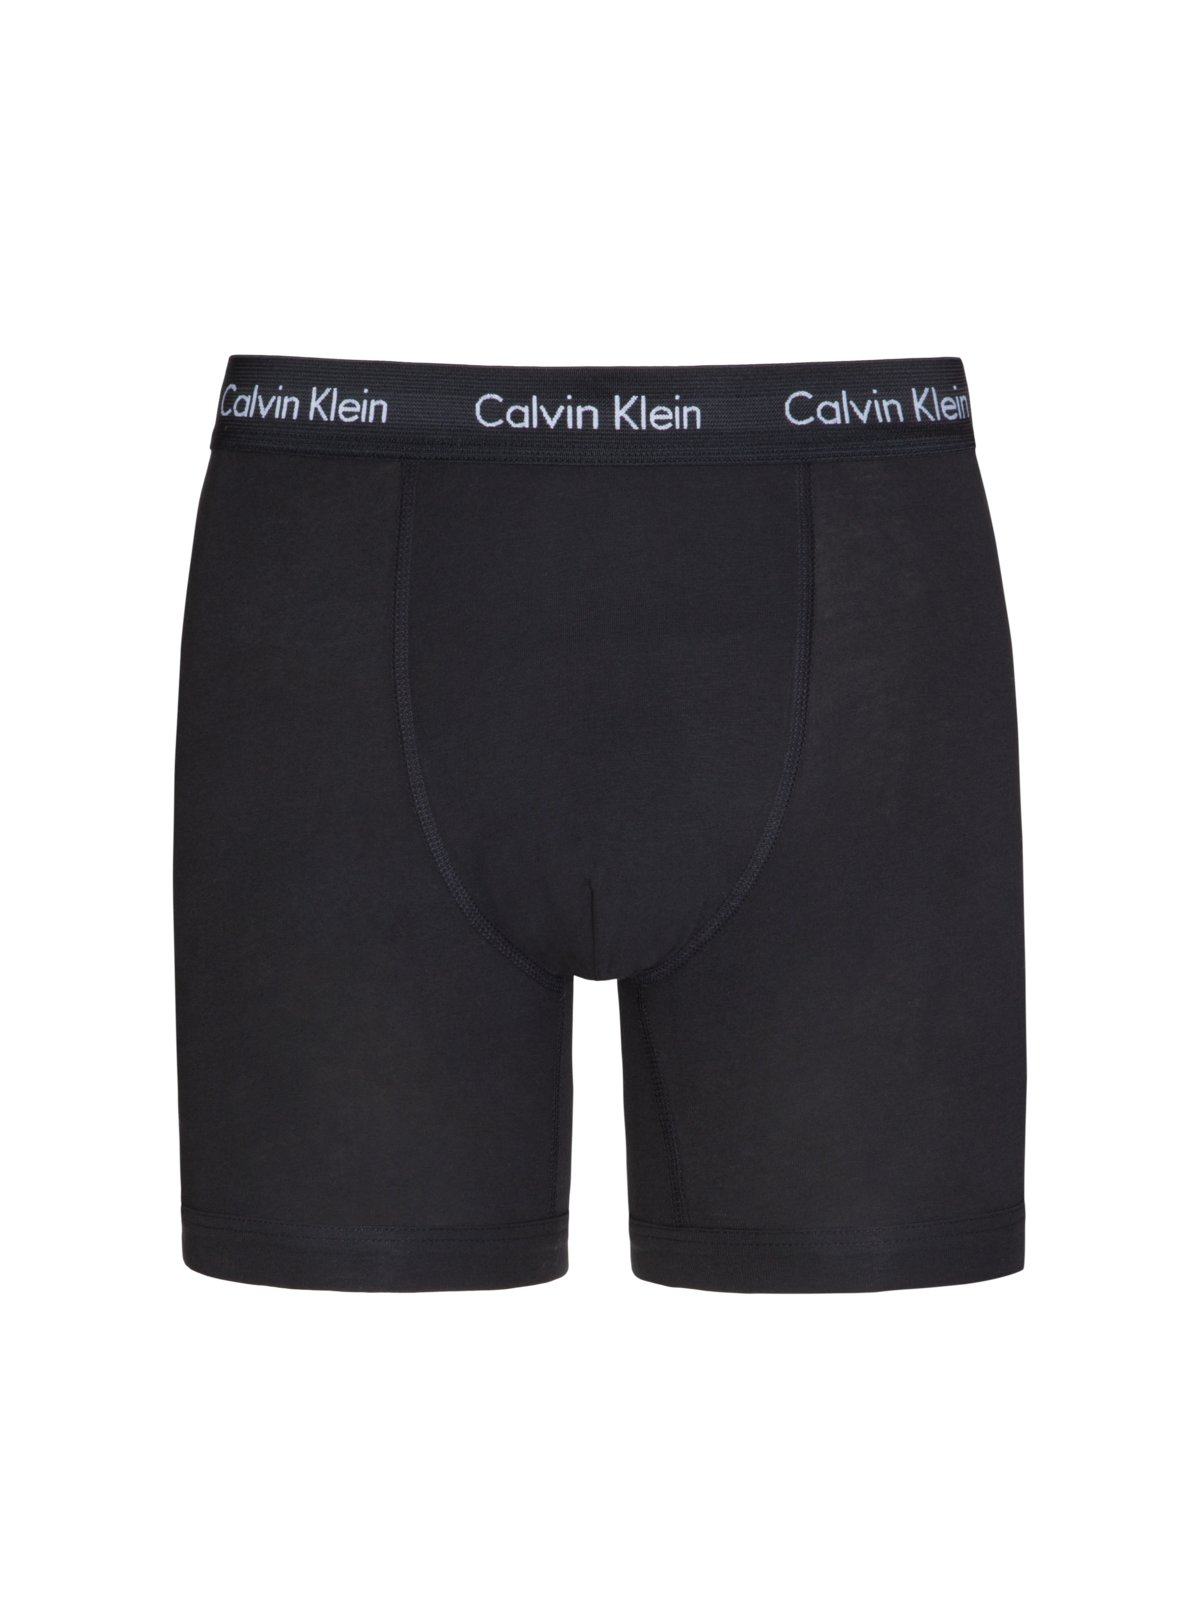 Calvin Klein Shorts mit Stretchanteil, sleepwear